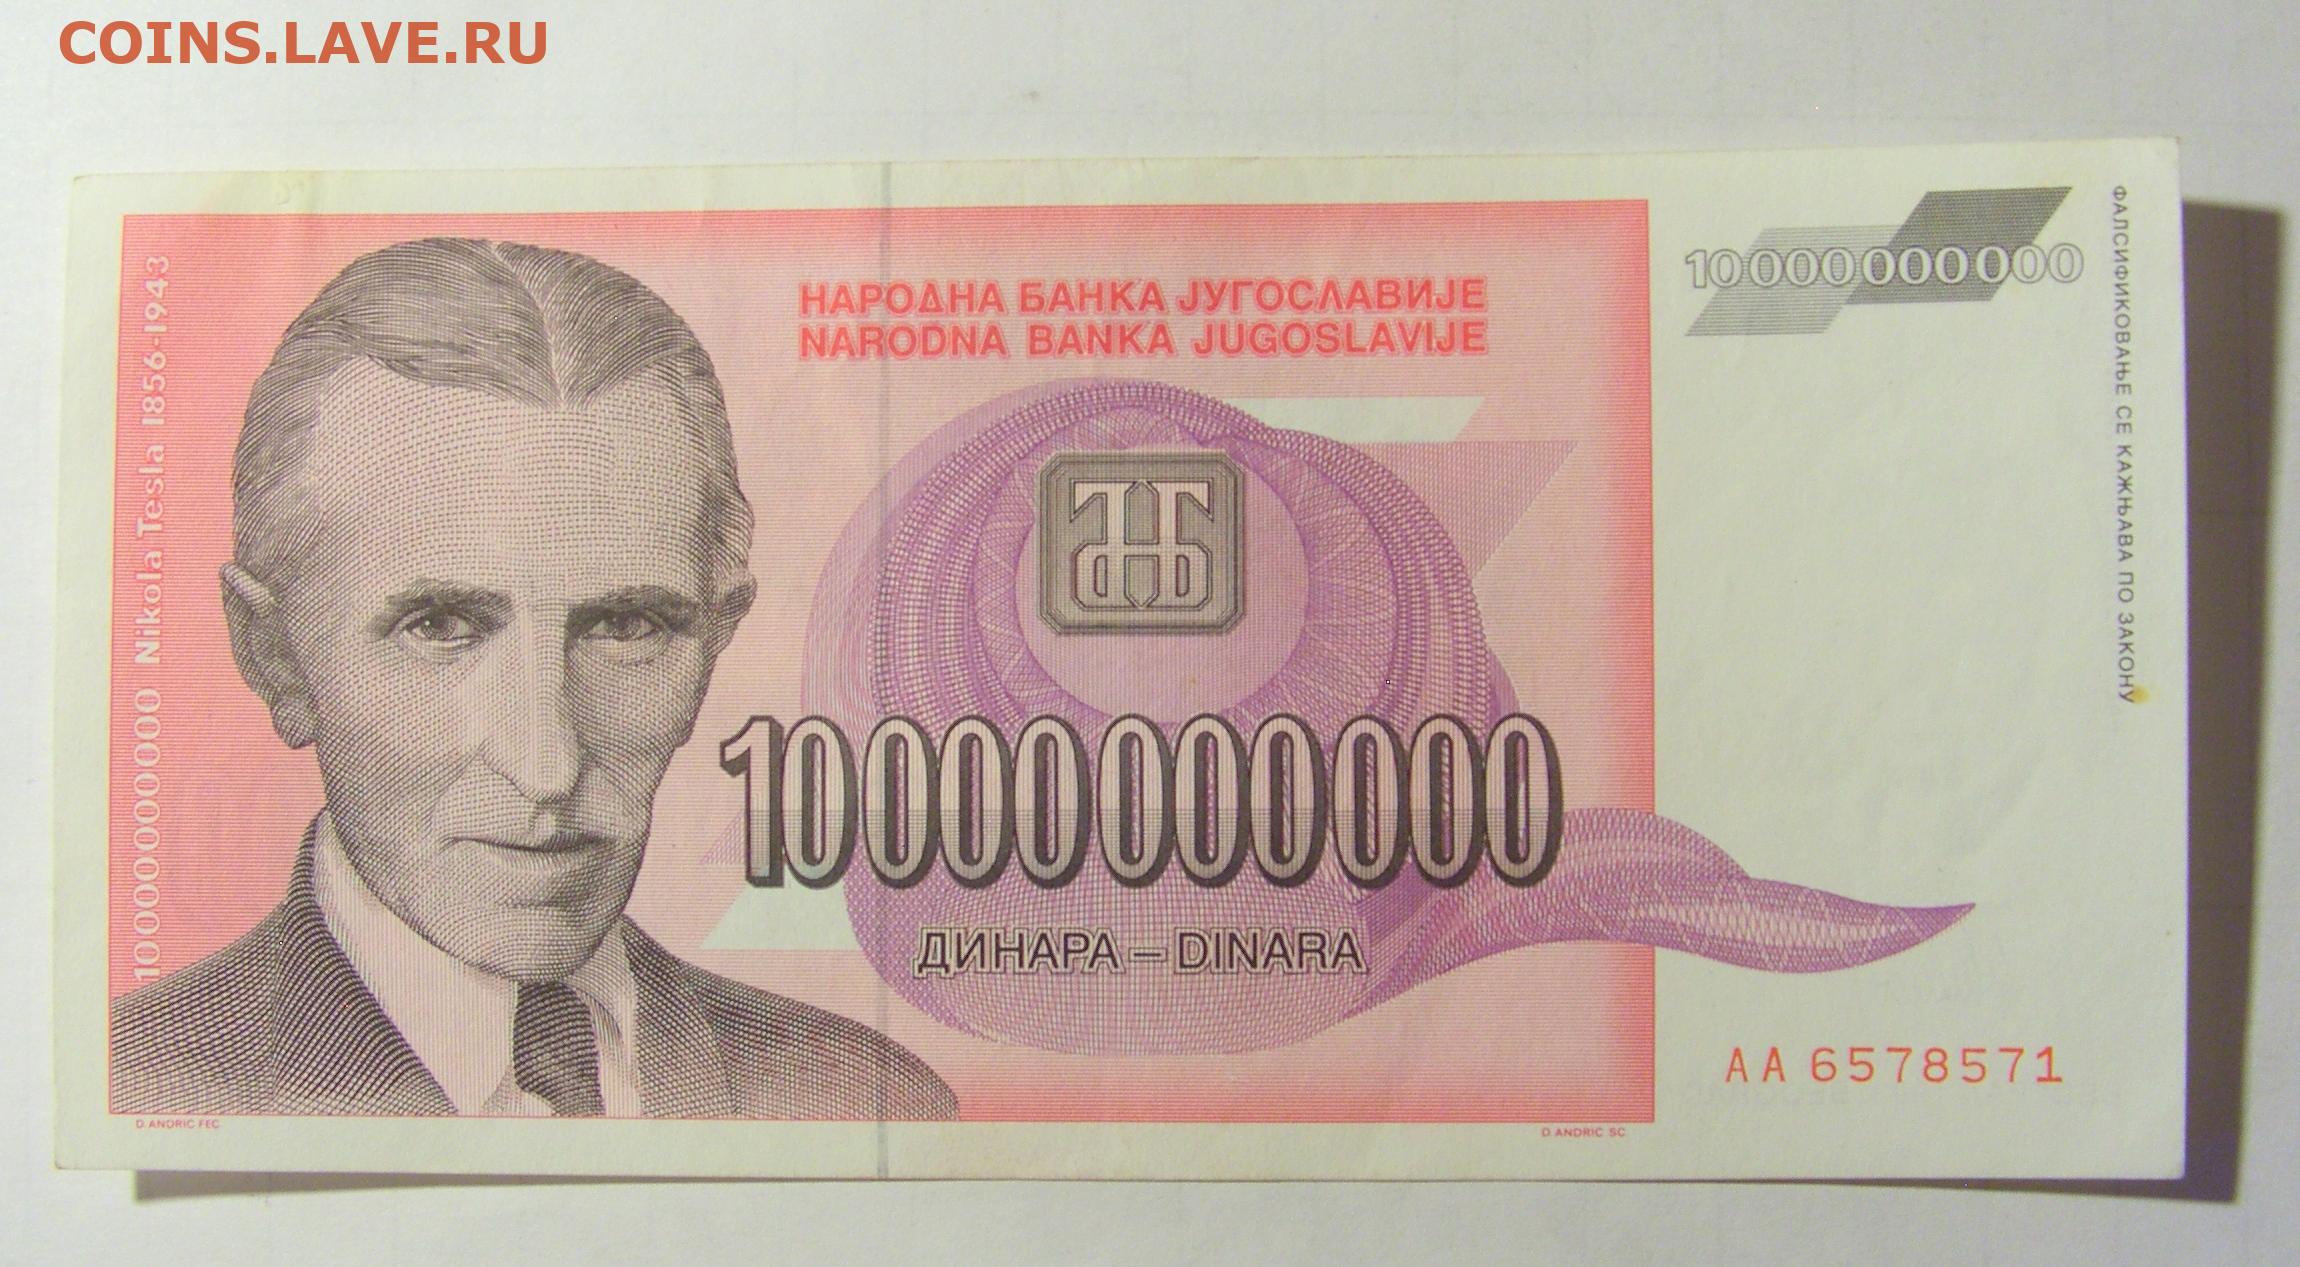 10000000000 долларов. Банкнота 10000000000 долларов. Купюра Югославия 10. 500 Миллиардов динаров 1993.